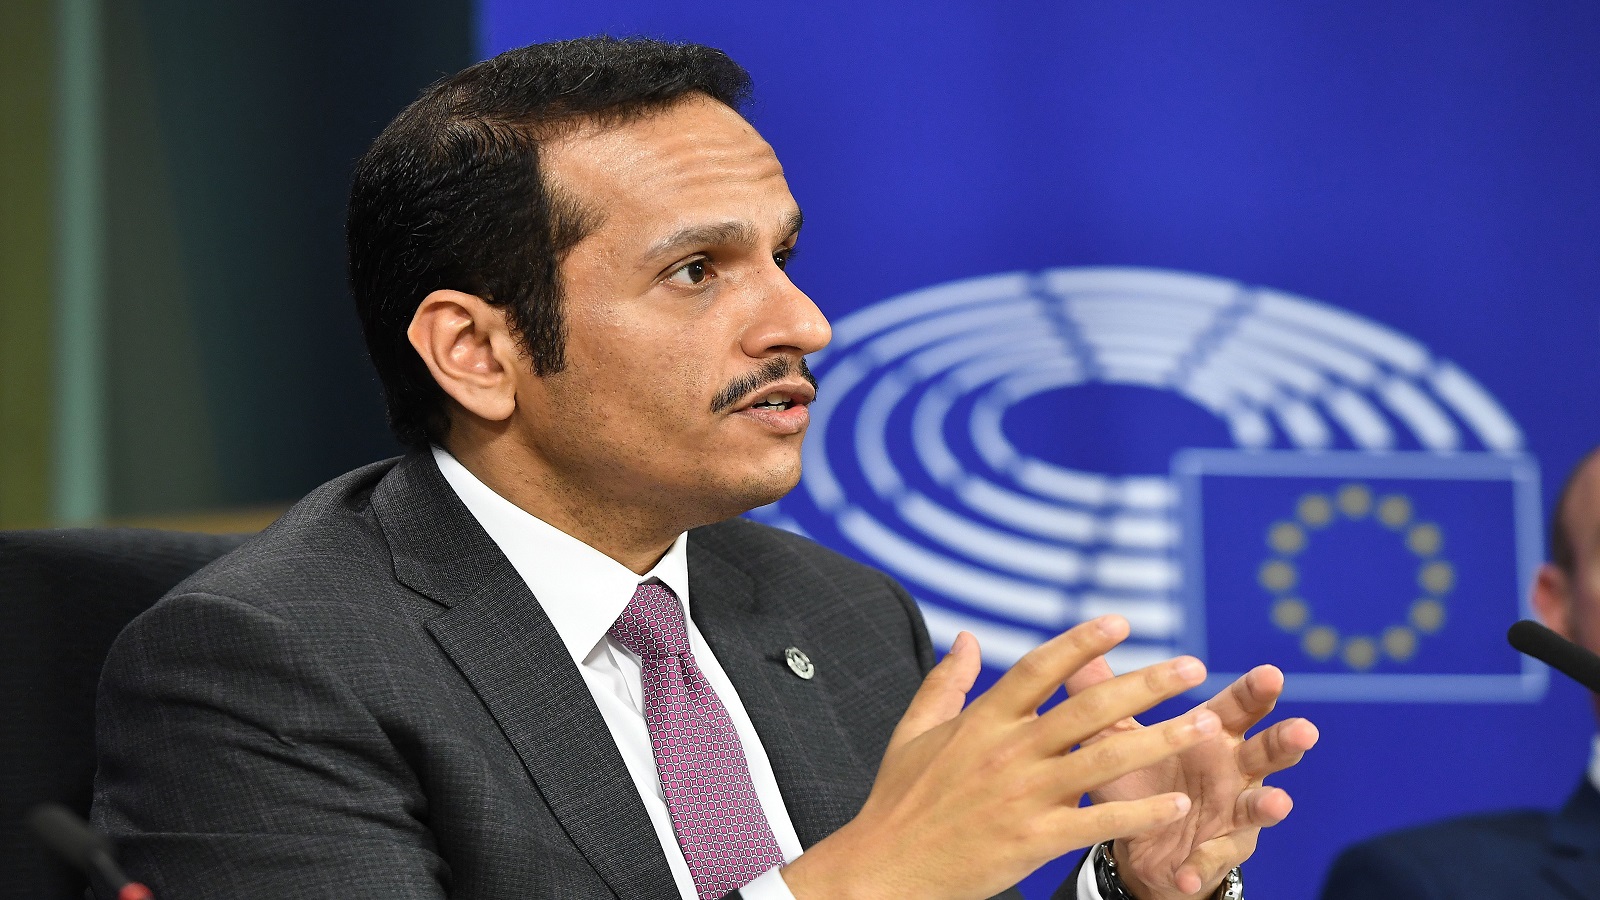 وزير خارجية قطر يتوقع آلية خليجية لحل الازمة